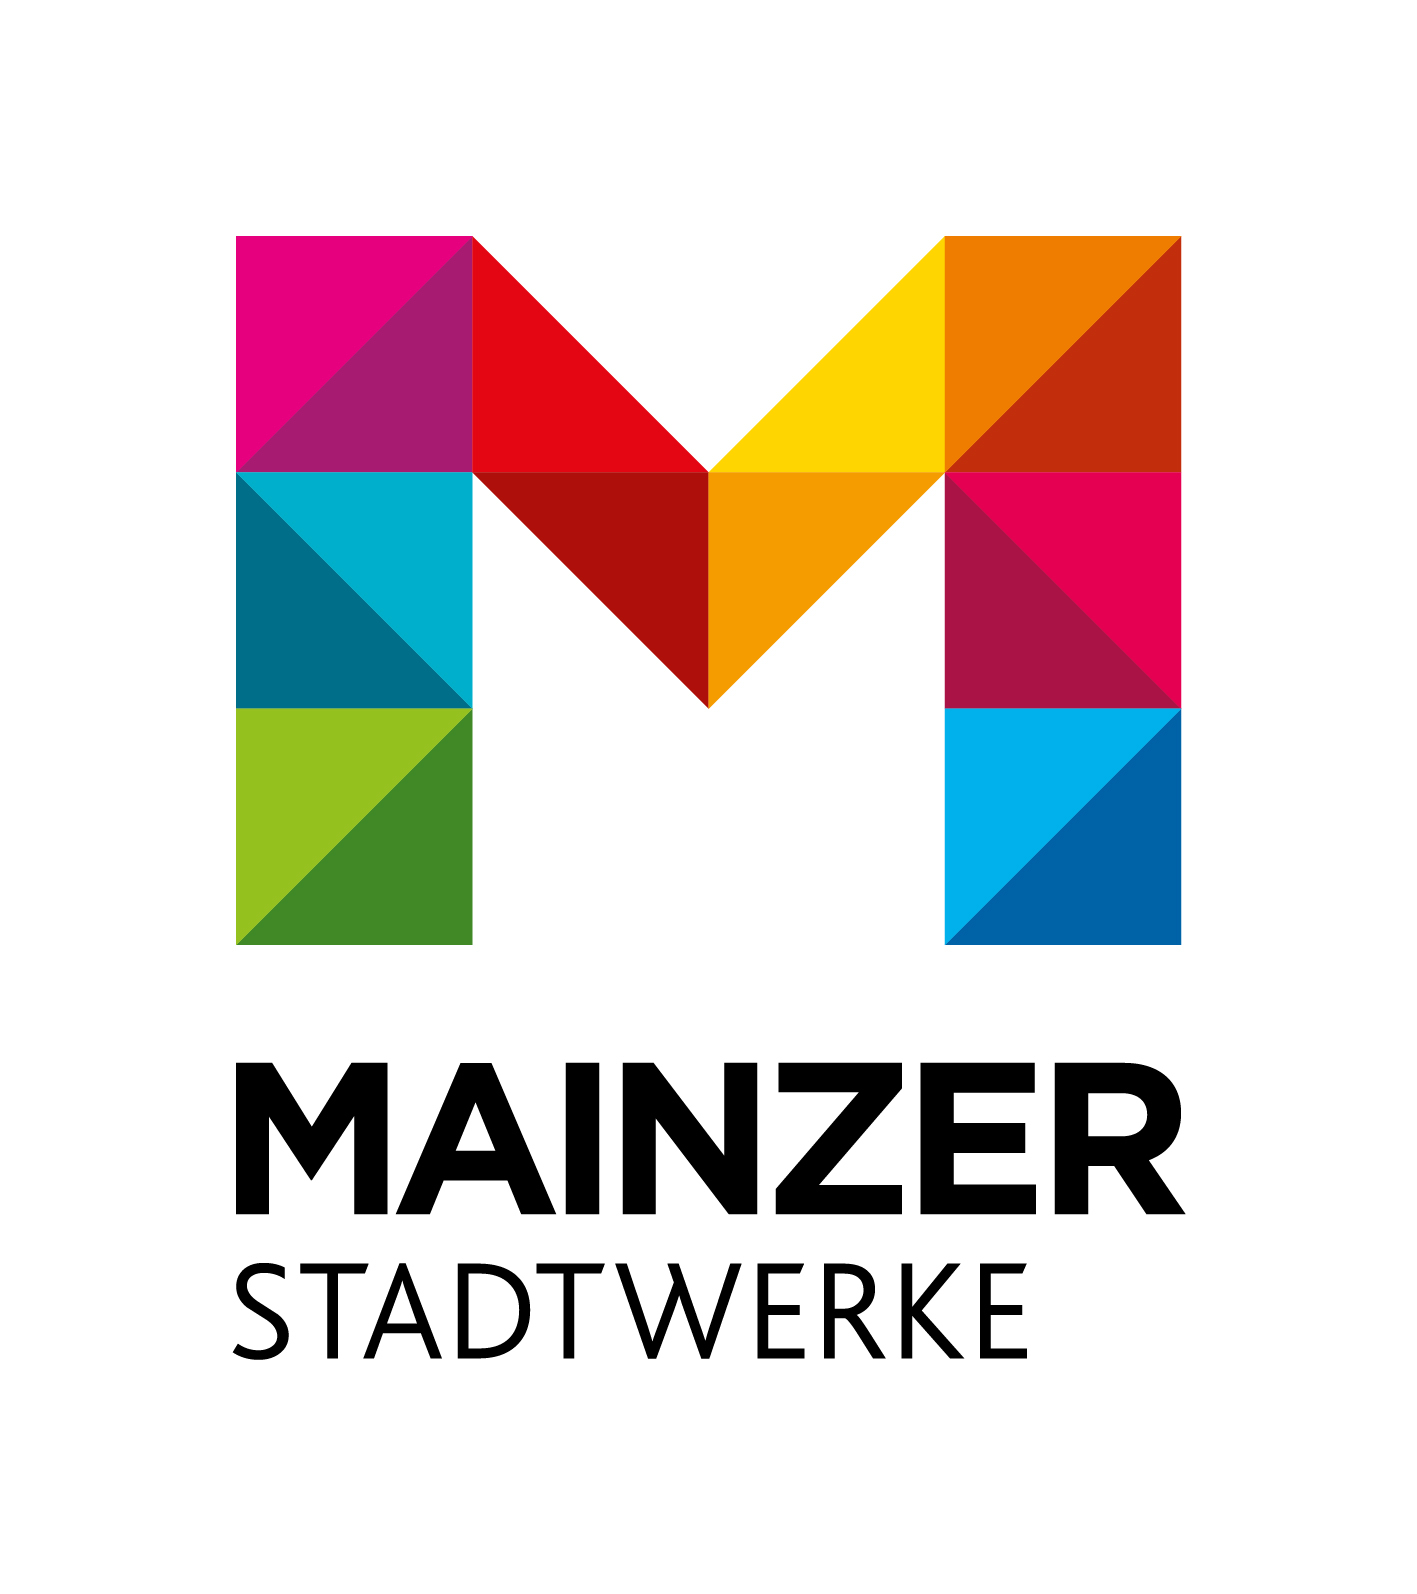 Mainzer stadtwerke logo